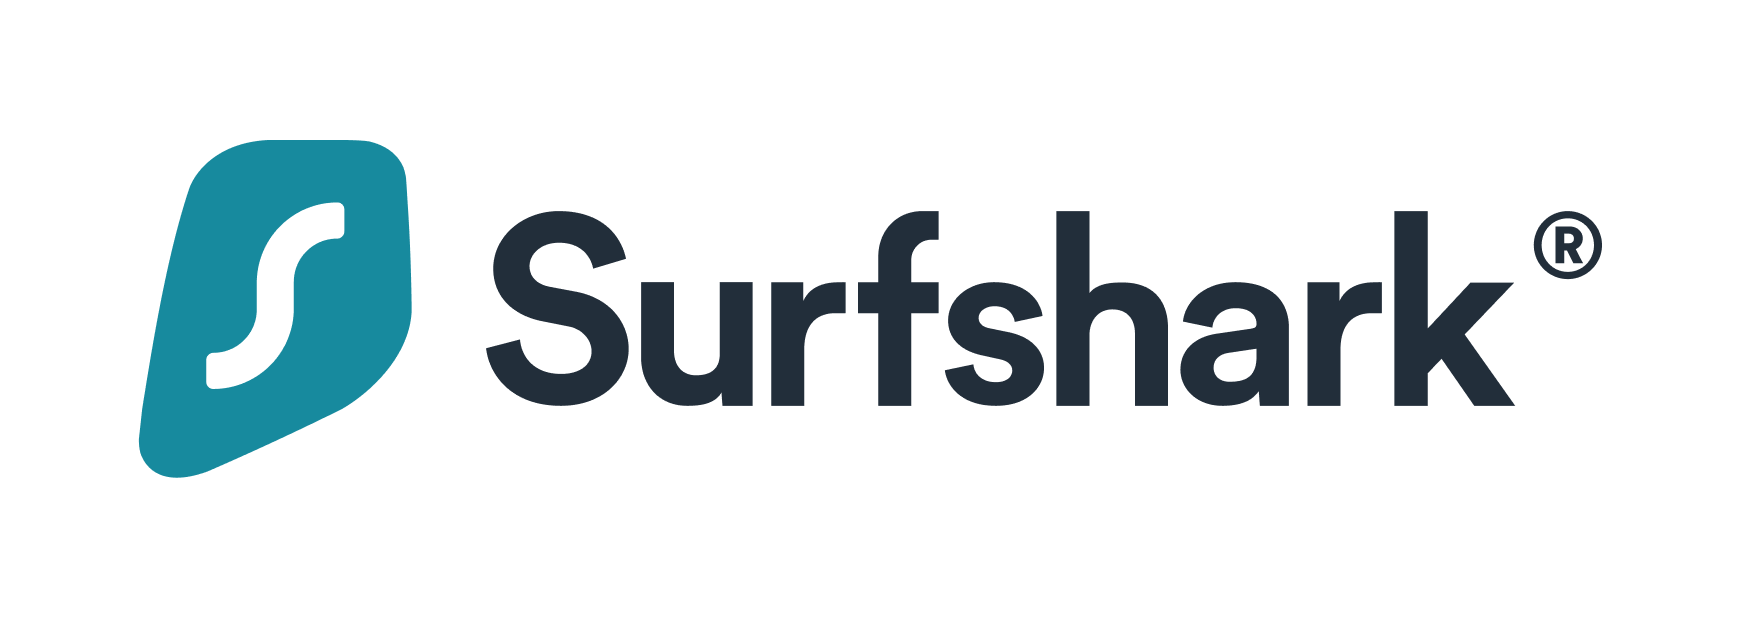 surfsharkロゴ